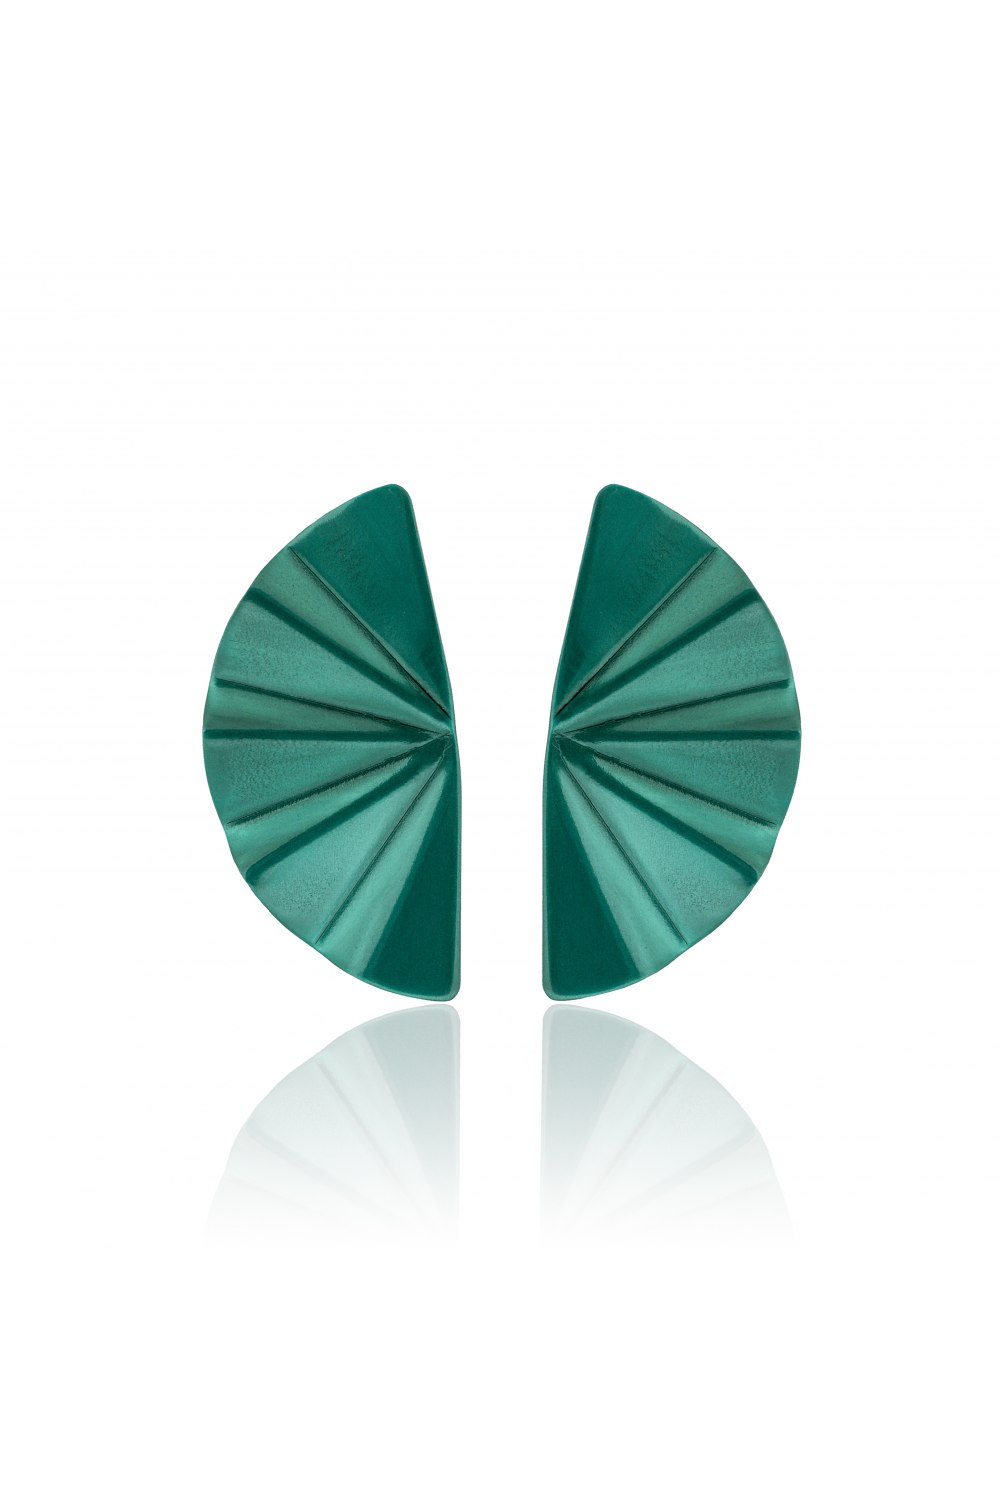 ANASTASIA KESSARIS - Geisha Nanoceramic Aquamarine Titanium Earrings Medium